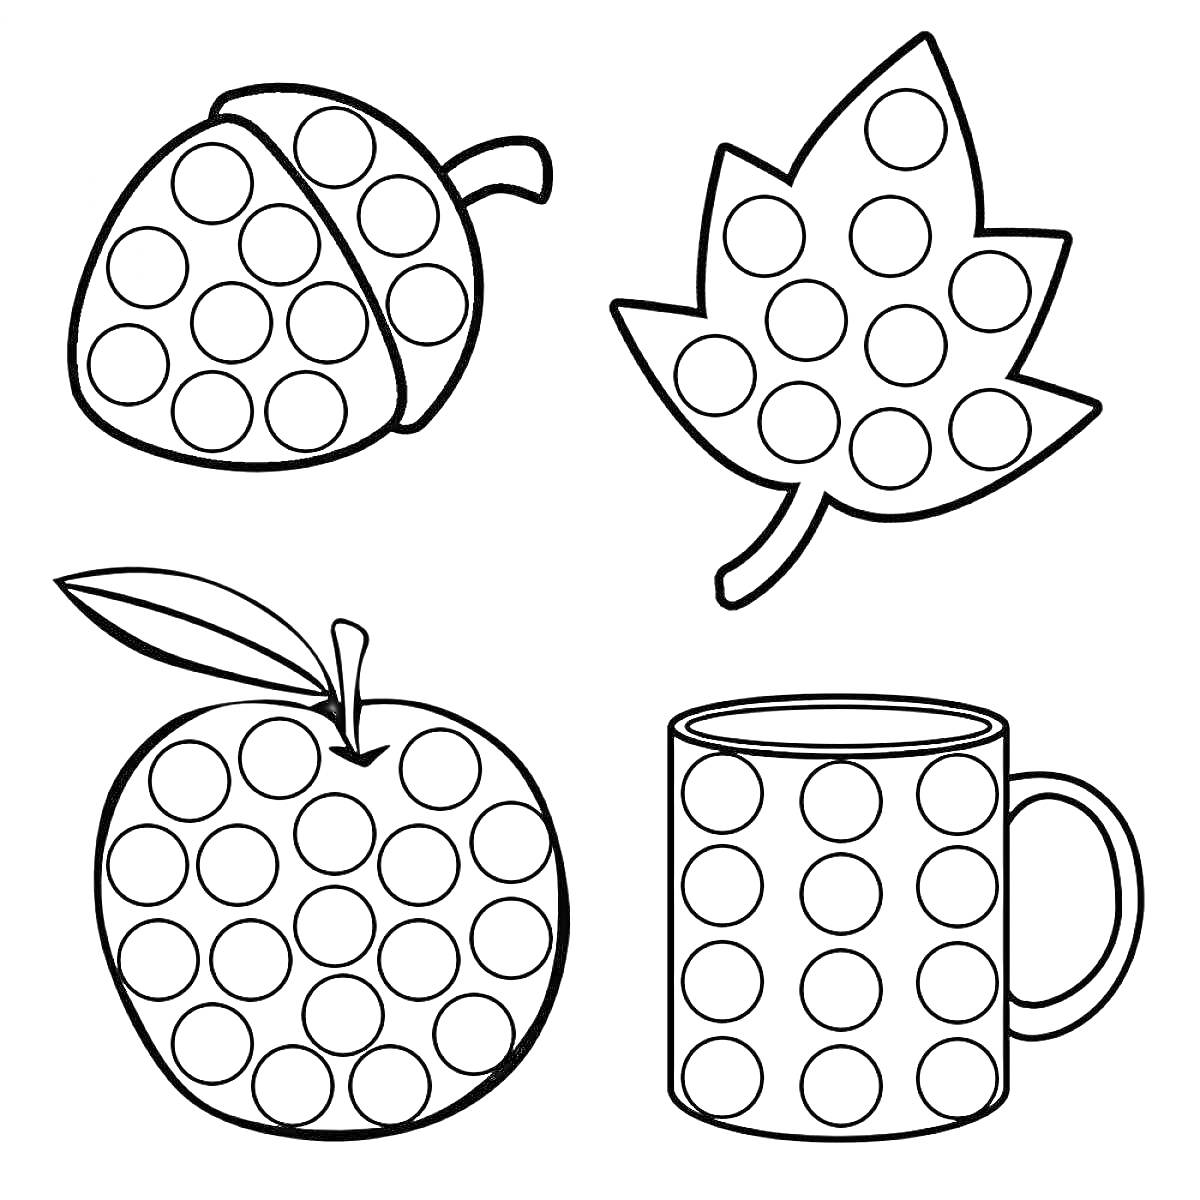 Раскраска Желудь, лист, яблоко, кружка с кружочками для раскрашивания пальчиками